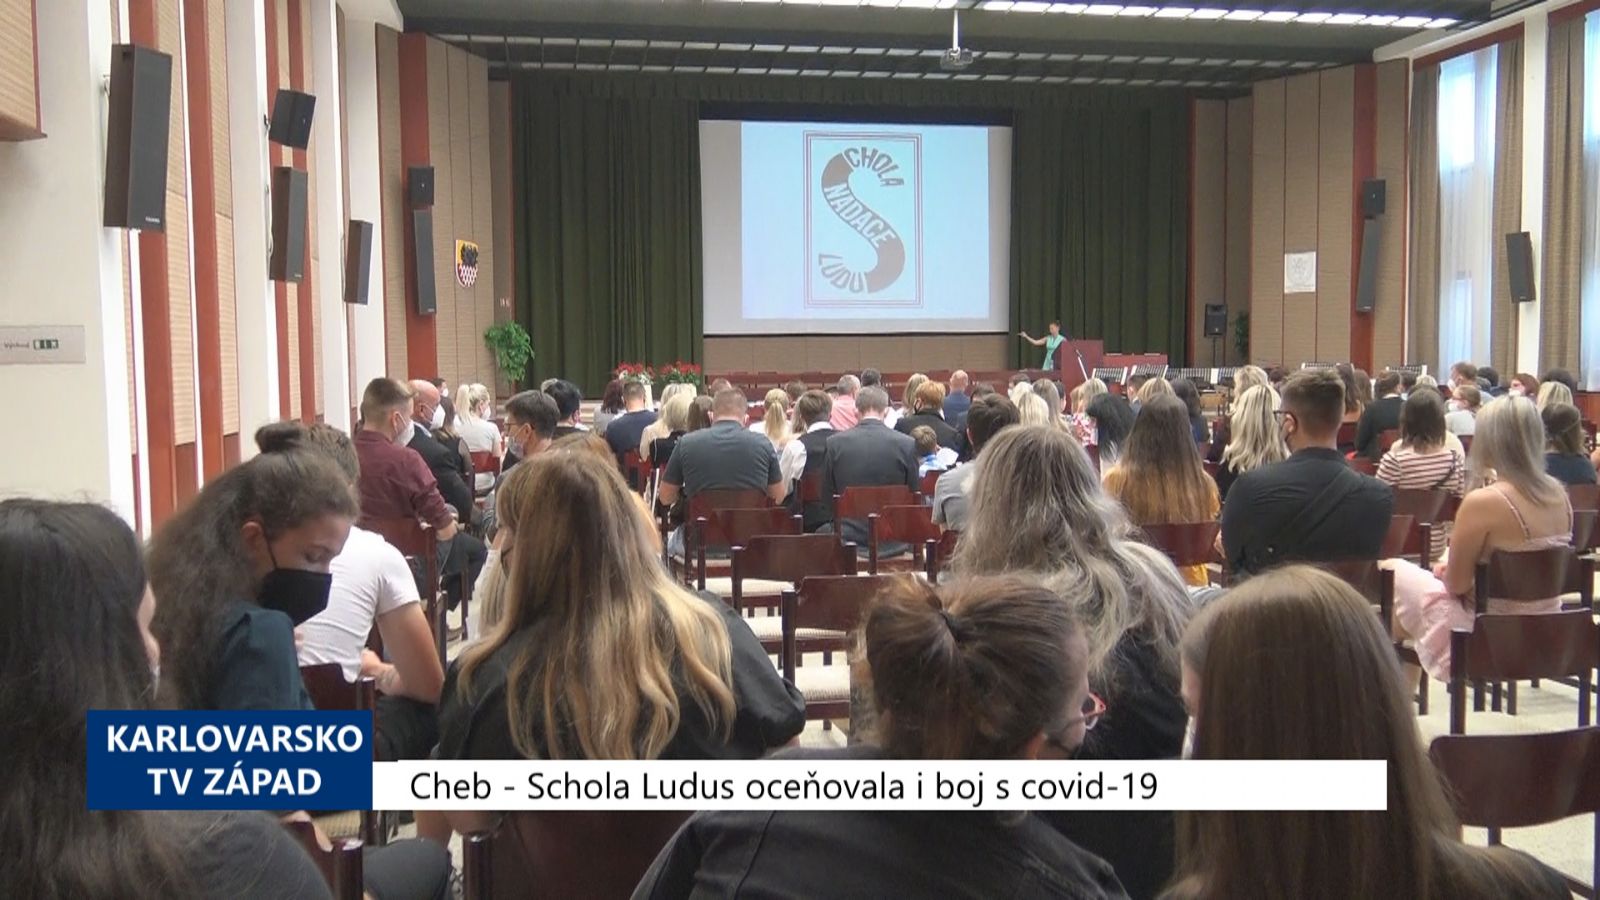 Cheb: Schola Ludus oceňovala i boj s covid-19 (TV Západ)